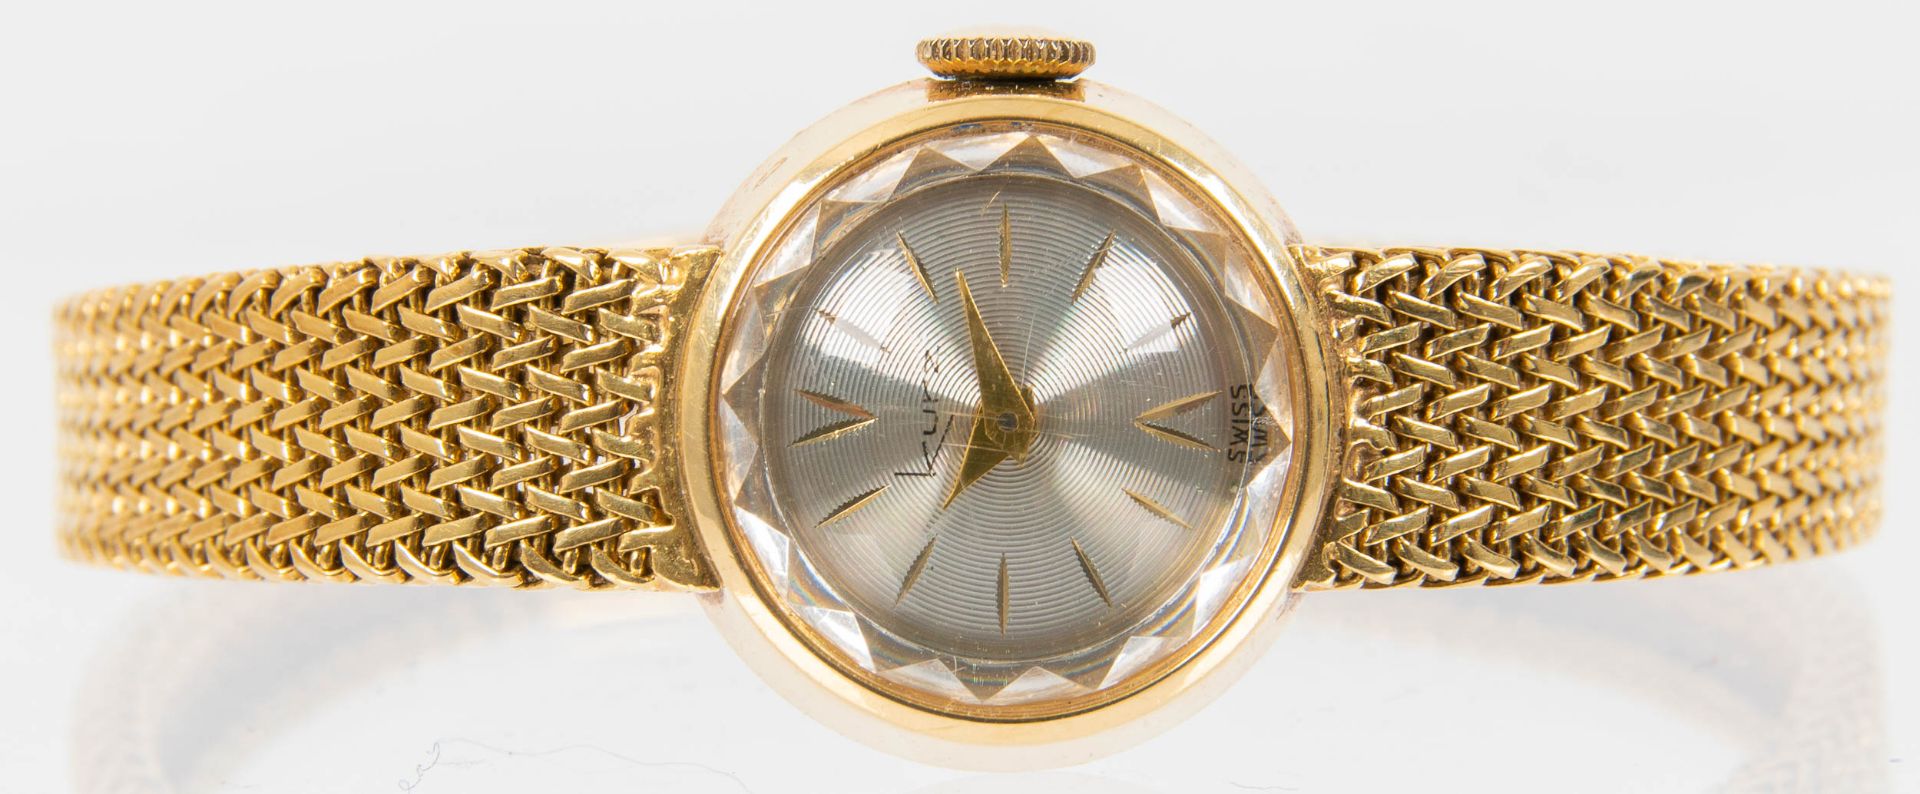 Klassische Damenarmbanduhr der Marke "KURZ-SWISS", Gehäuse und Armband in 750er Gelbgold, Werk läuf - Bild 4 aus 9